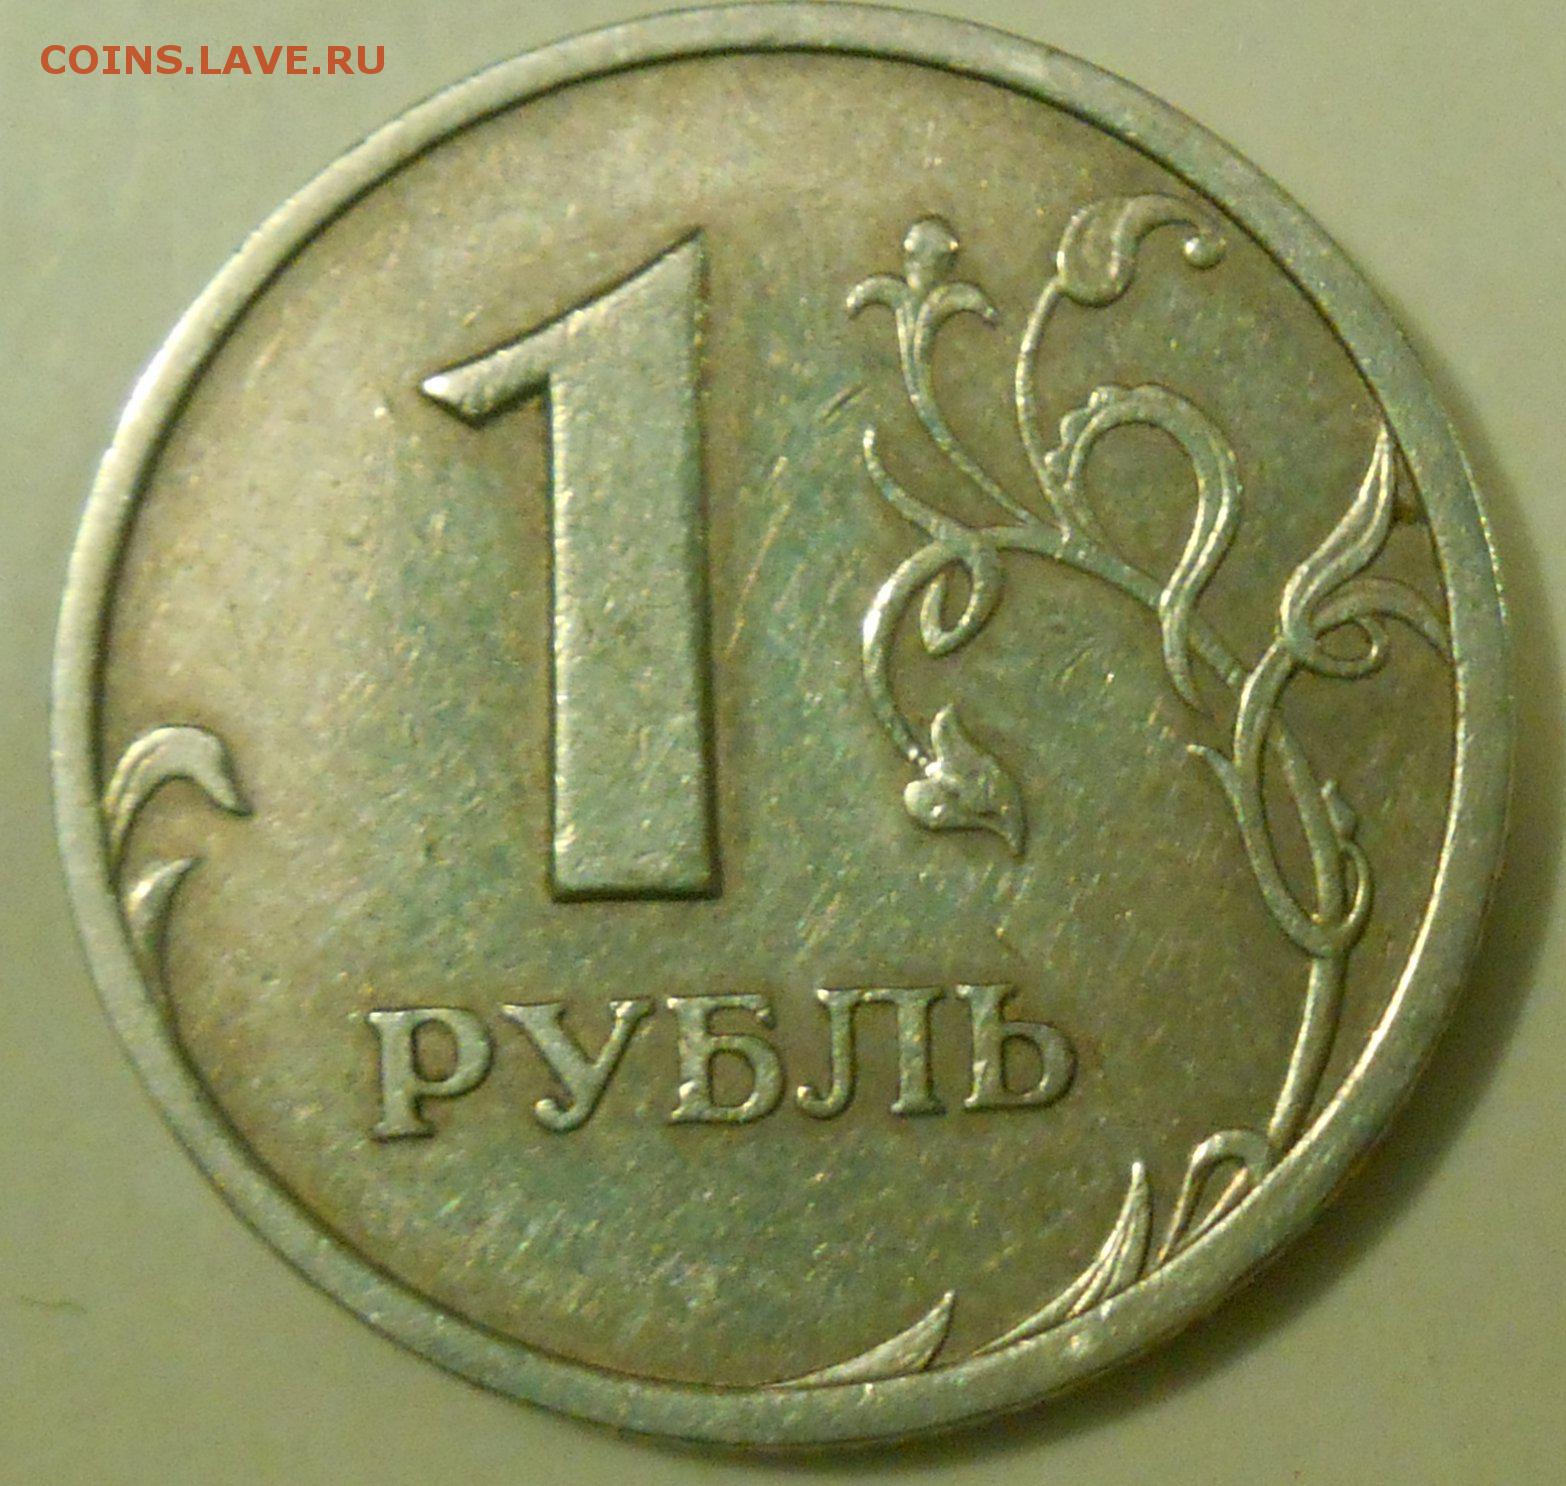 Кидать рубль. Рубль картинка. Скиньте рубль. Картинка рубля без фона. Рубль по двадцать пять рублей.